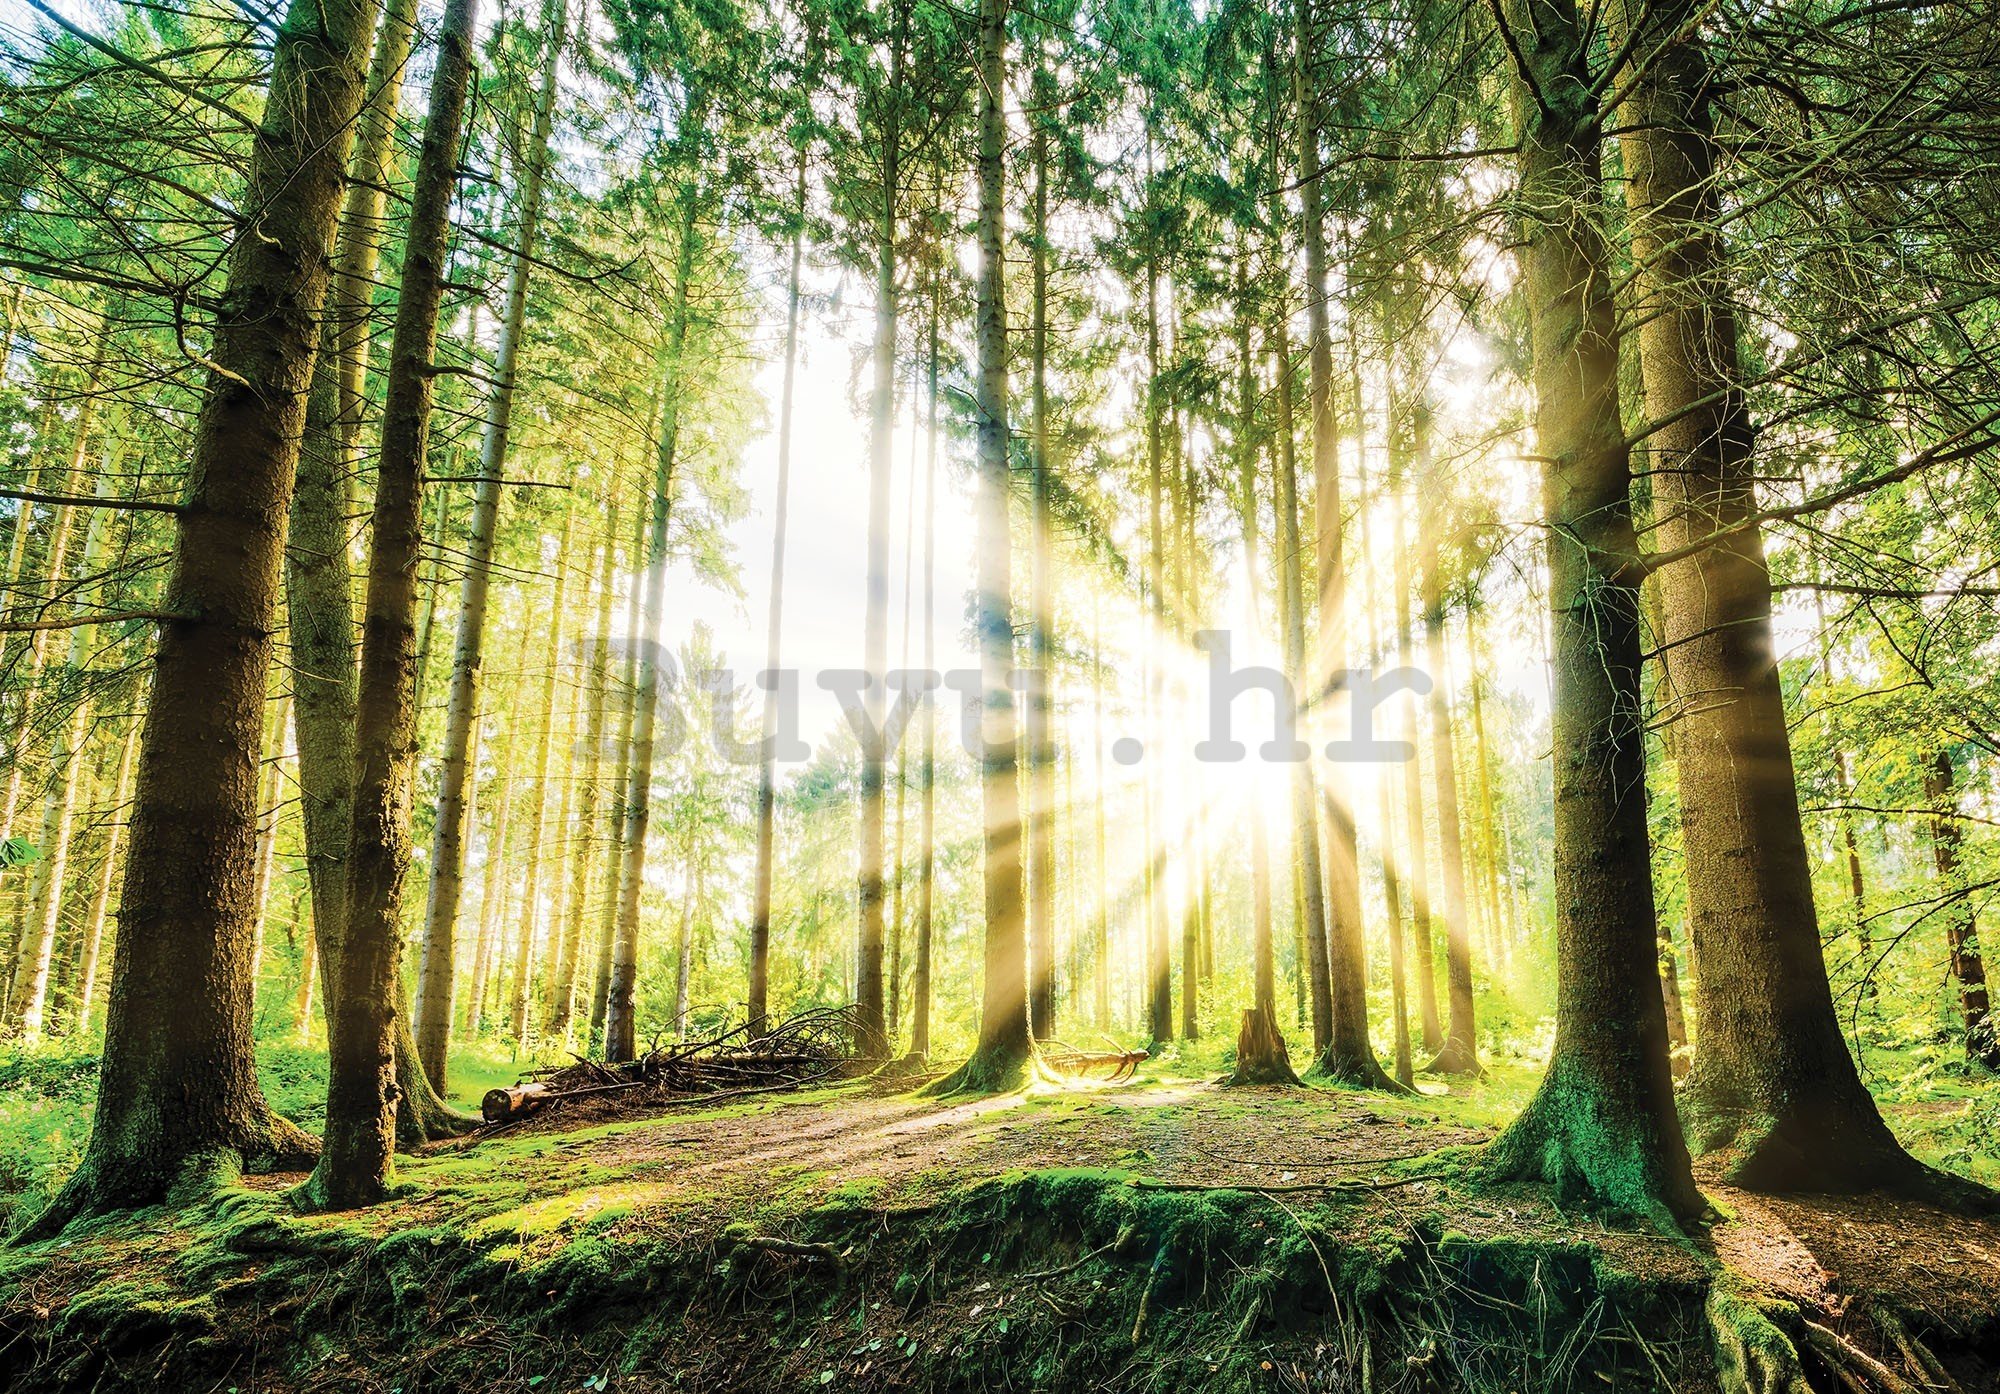 Vlies foto tapeta: Sunce u šumi (2) - 416x254 cm